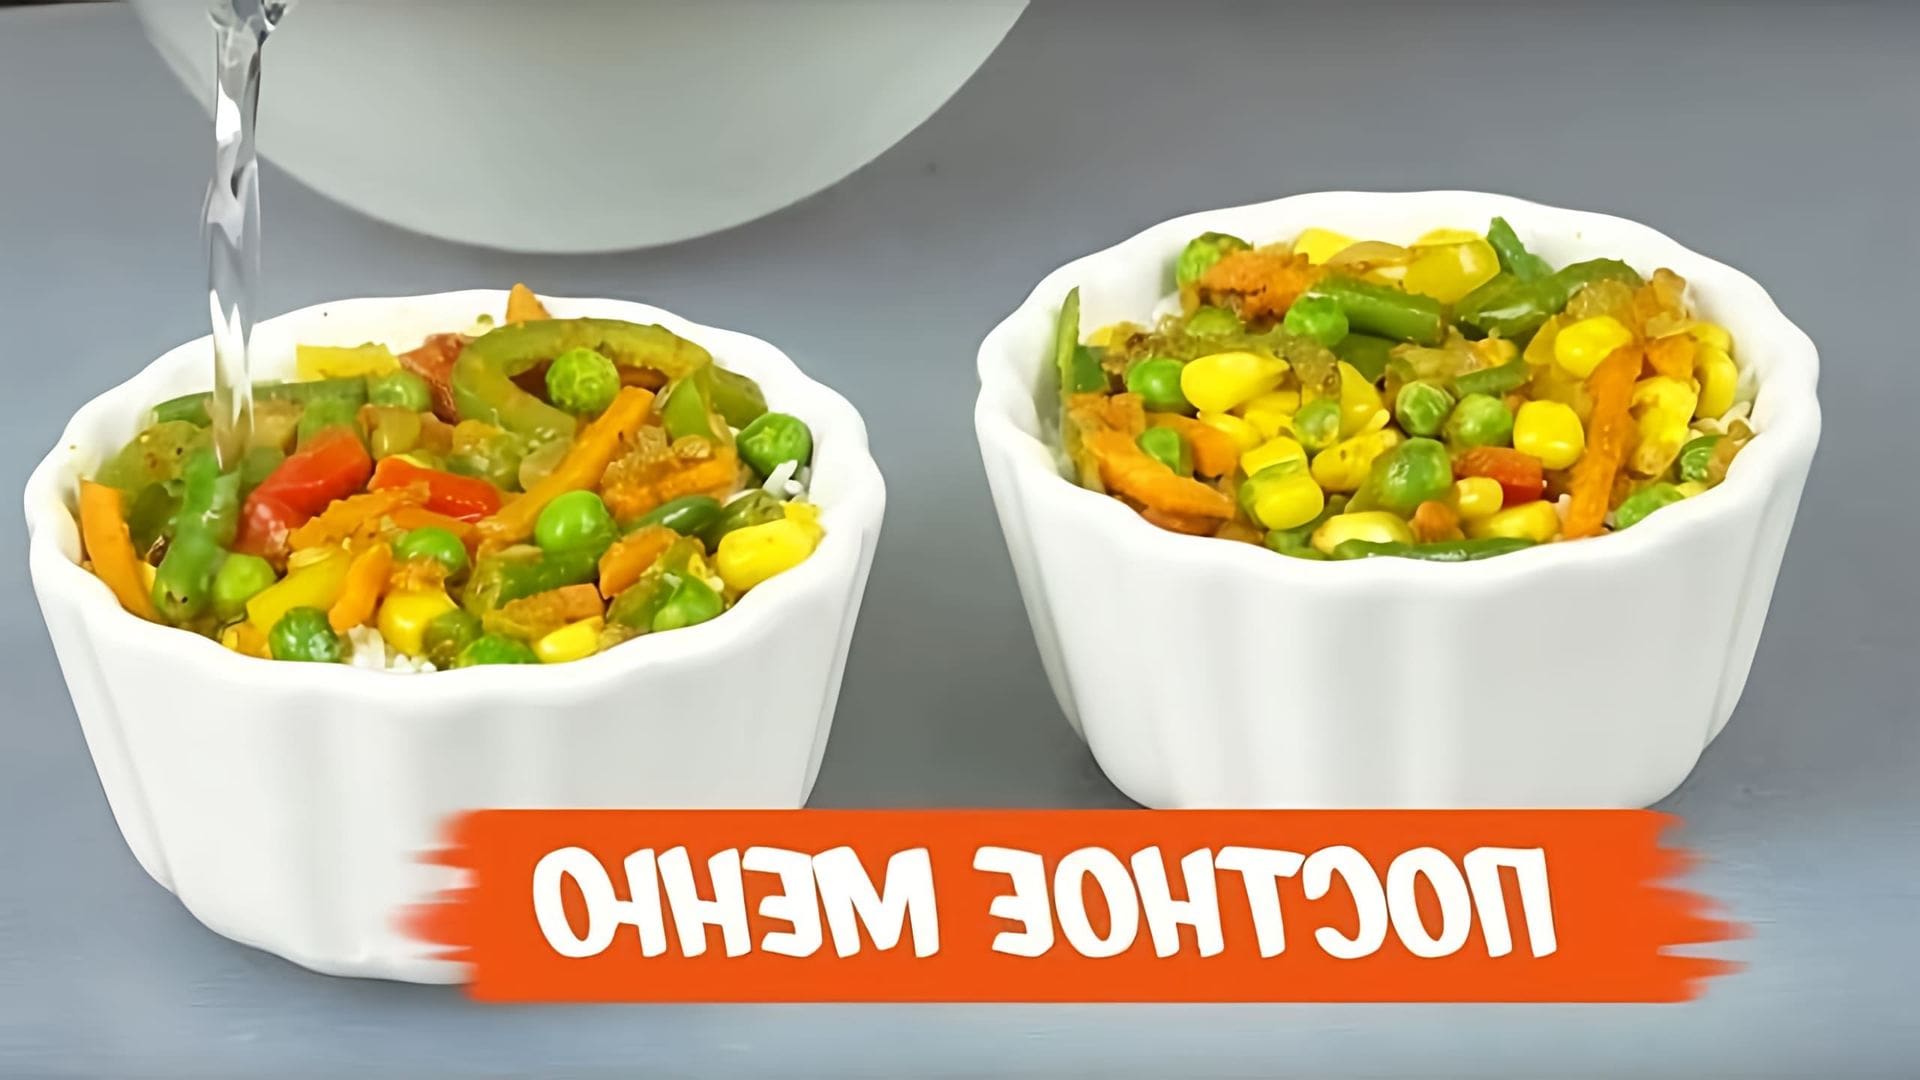 В этом видео показаны пять рецептов постных блюд, которые можно приготовить на праздничный стол